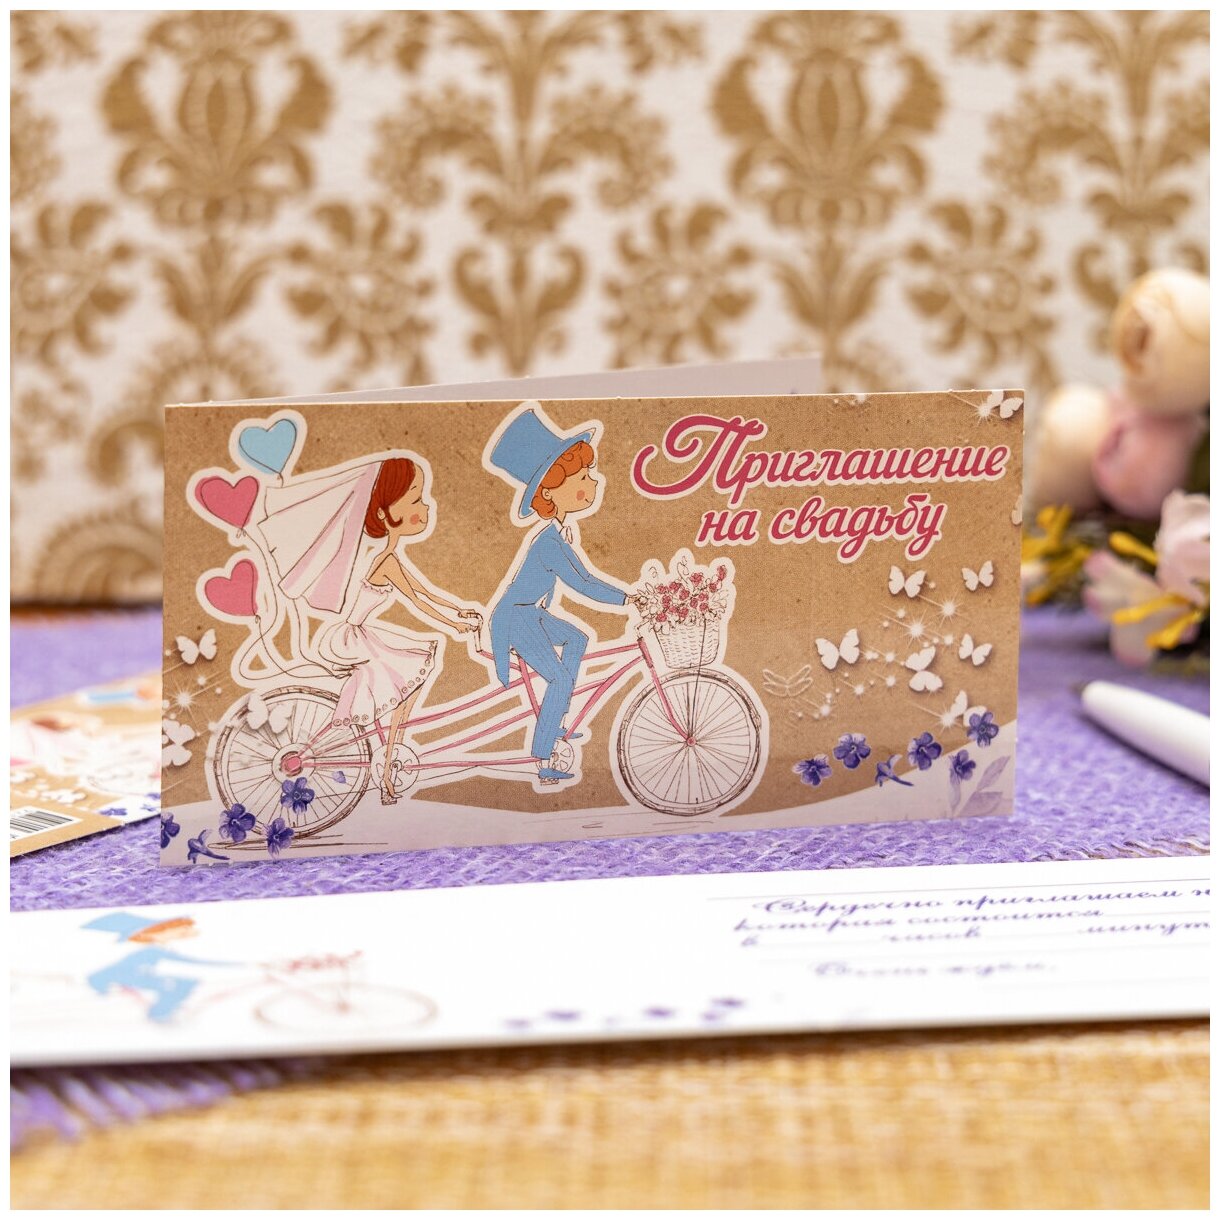 Набор свадебных приглашений на бракосочетание в виде открыток с молодоженами и бабочками в коричневых и белых тонах, 20 штук